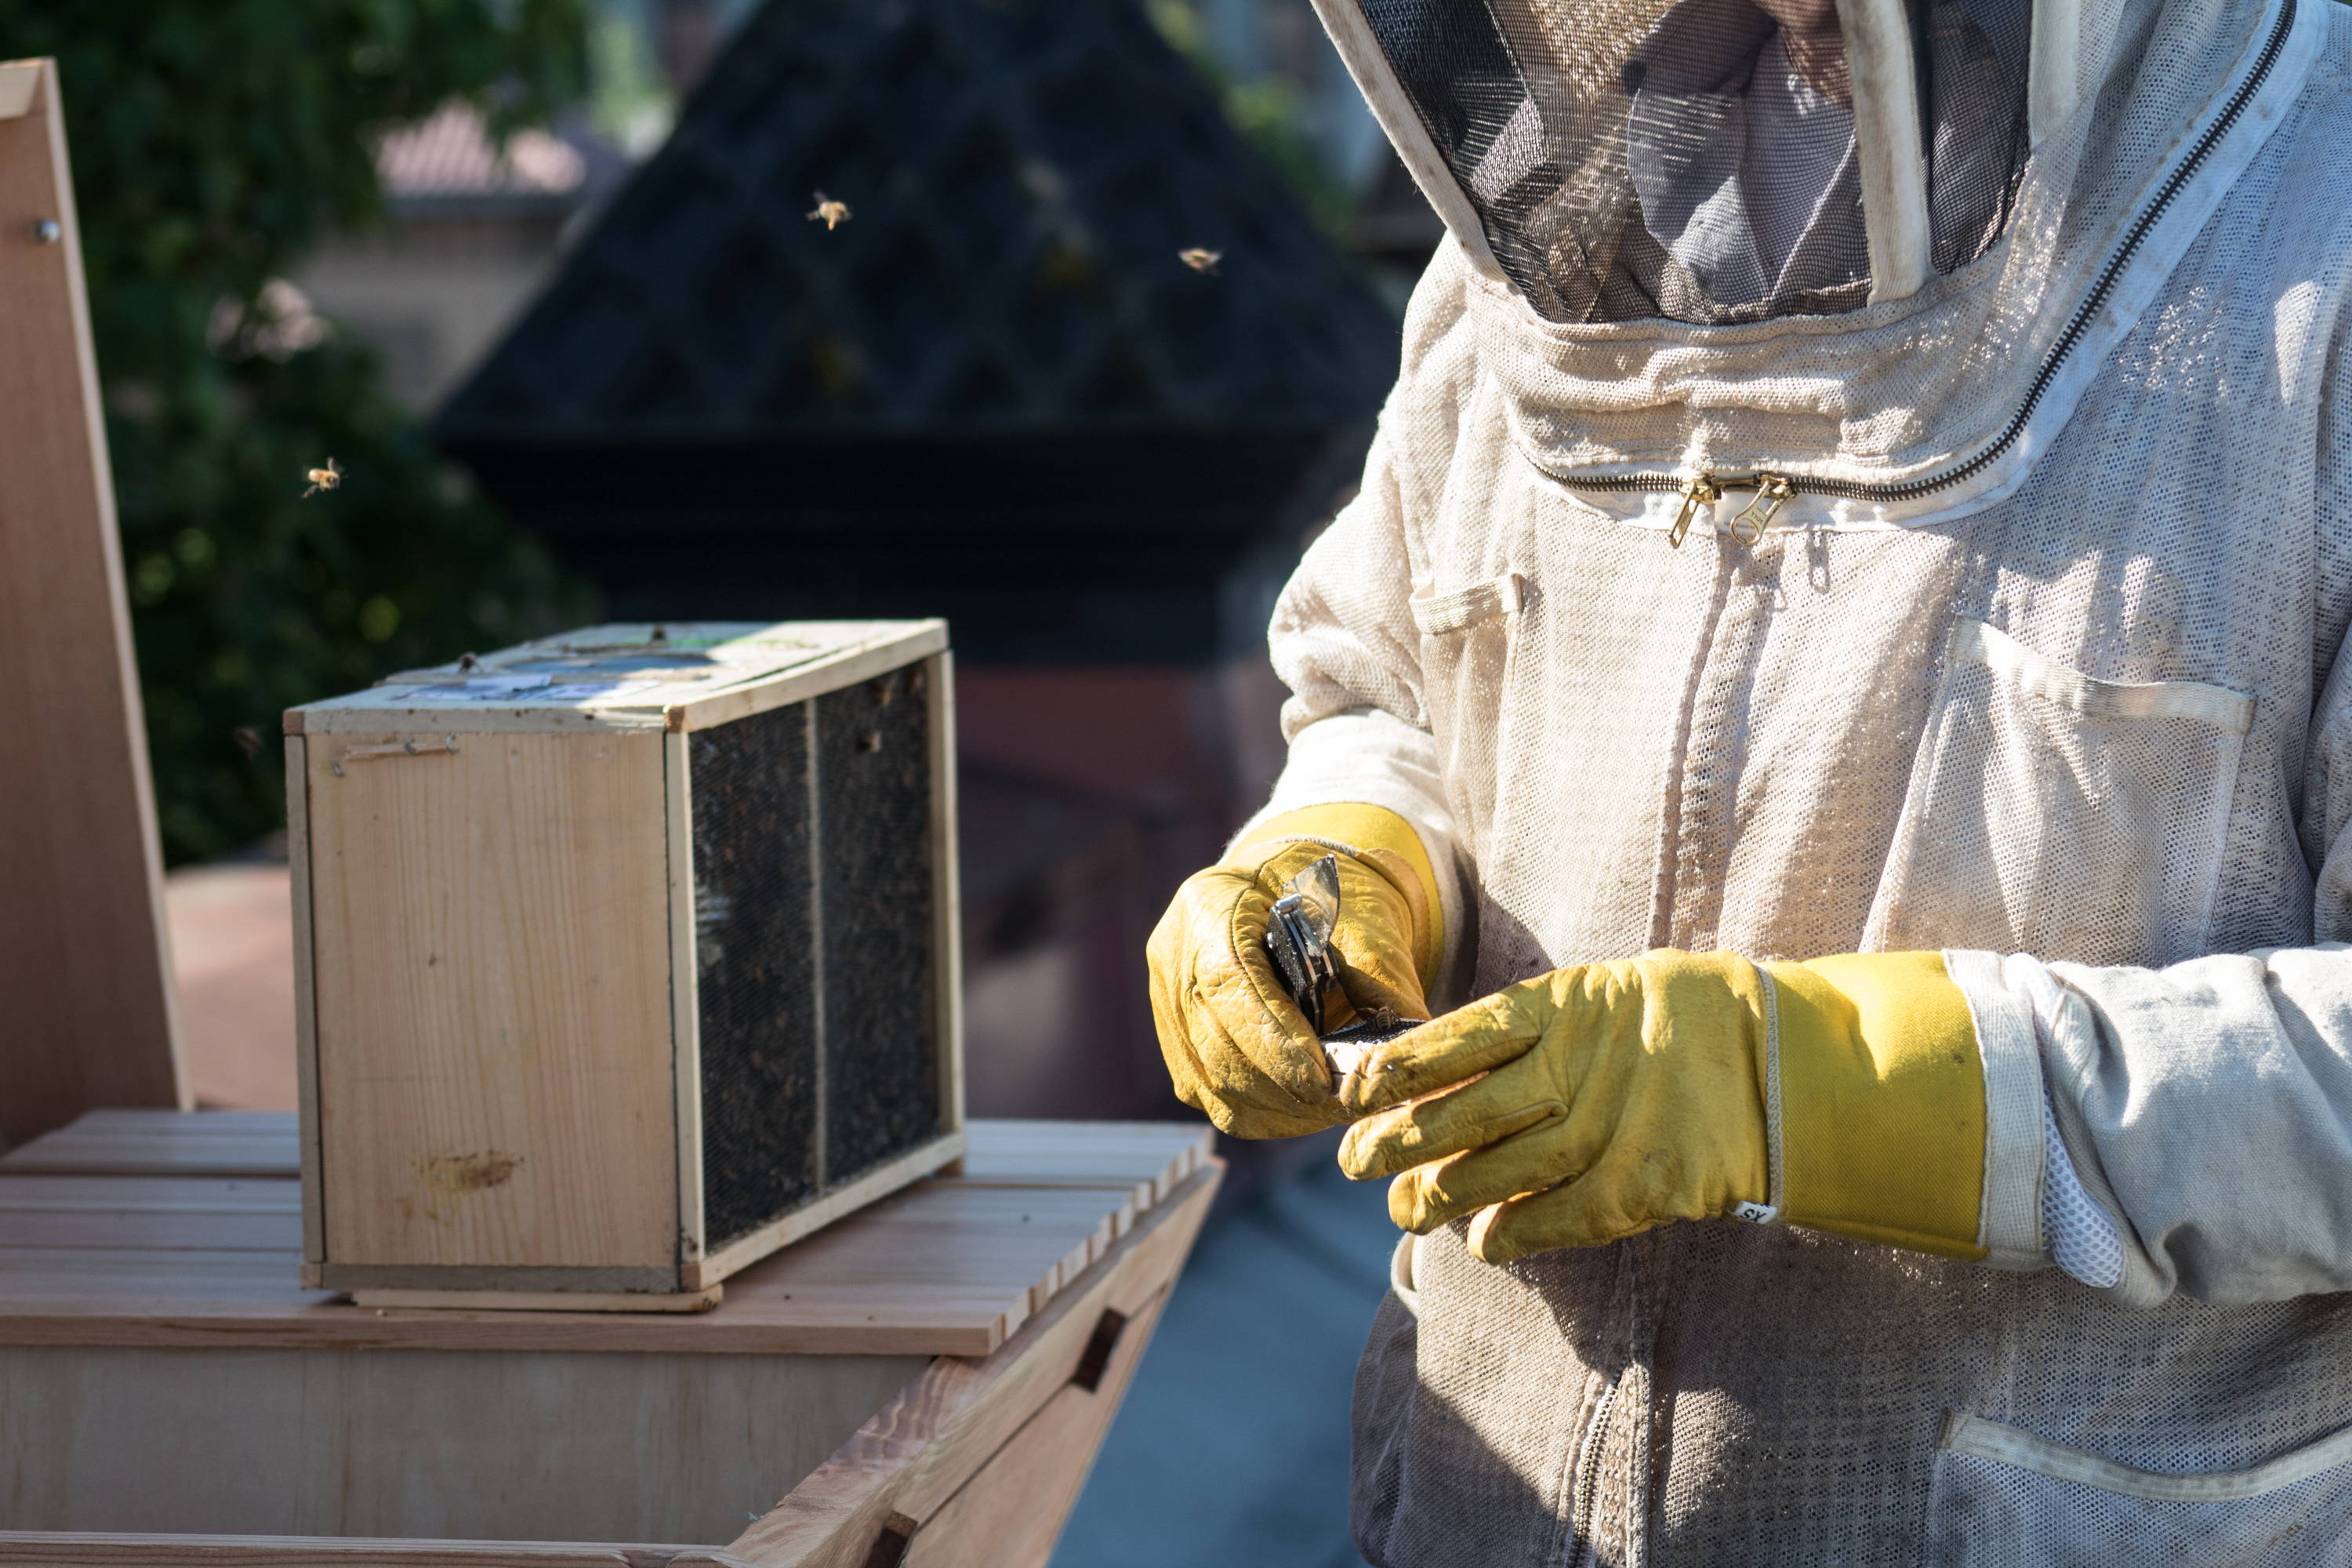 一个养蜂人的照片，推荐几个网赌网站顶部酒吧蜂箱，和一个蜜蜂包